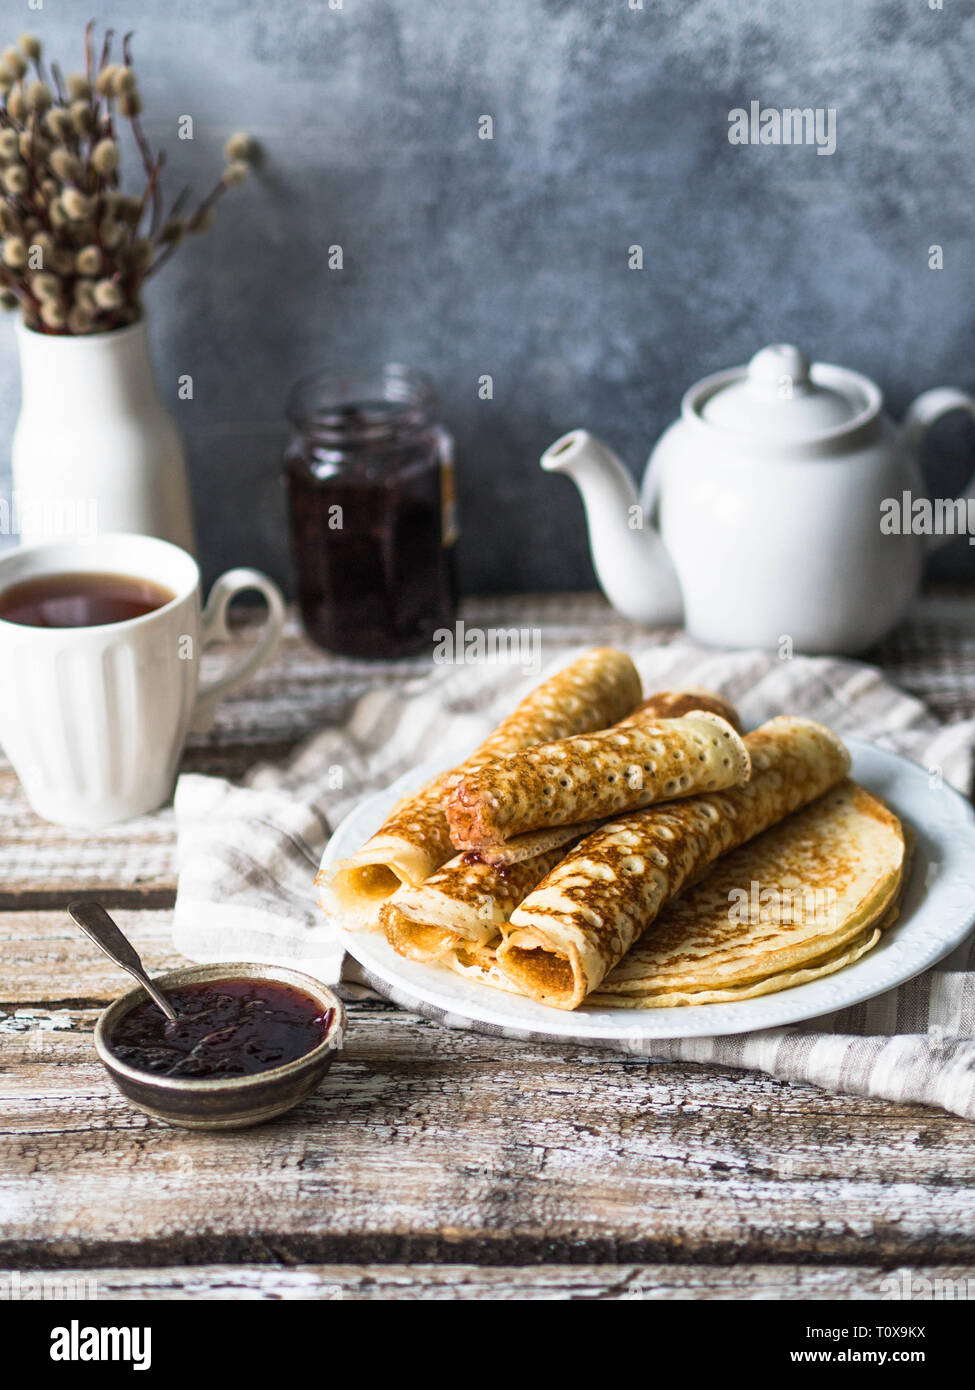 Russische hausgemachter Hefe Pfannkuchen gerollt in einem Rohr auf weiße Platte, Marmelade und Tee in die Tasse auf den Tisch. Traditionellen Weizen Pfannkuchen für Fastnacht. Stockfoto